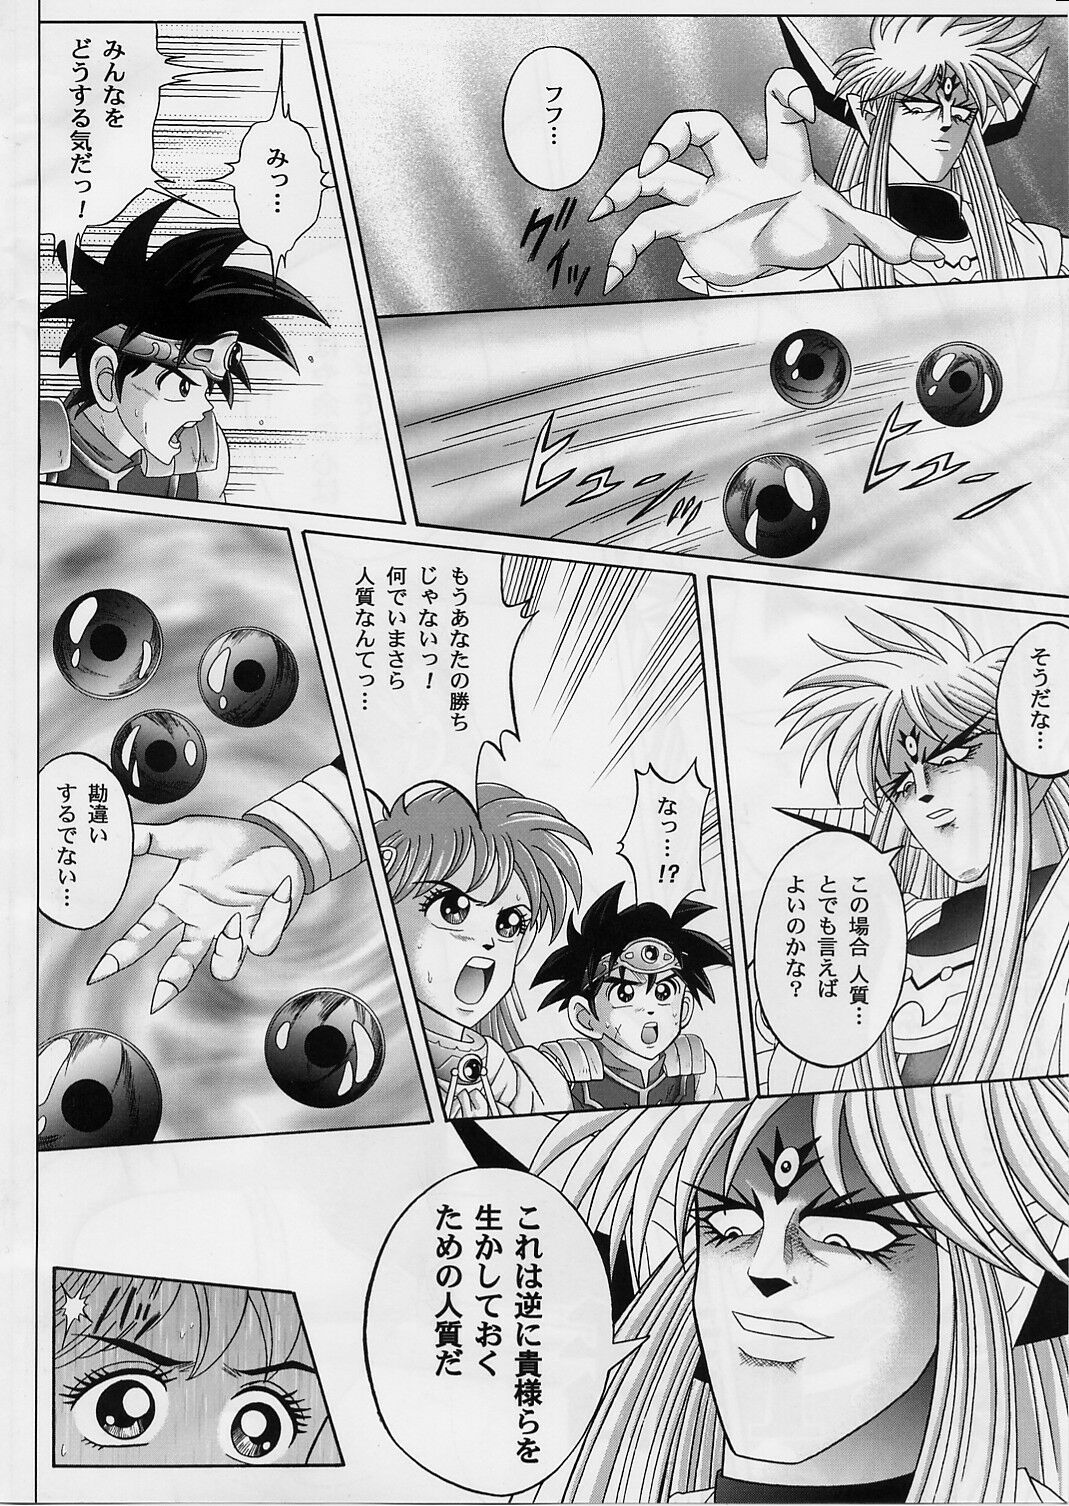 [Cyclone (Izumi, Reizei)] DIME ALLIANCE 2 (Dragon Quest Dai no Daibouken) page 5 full